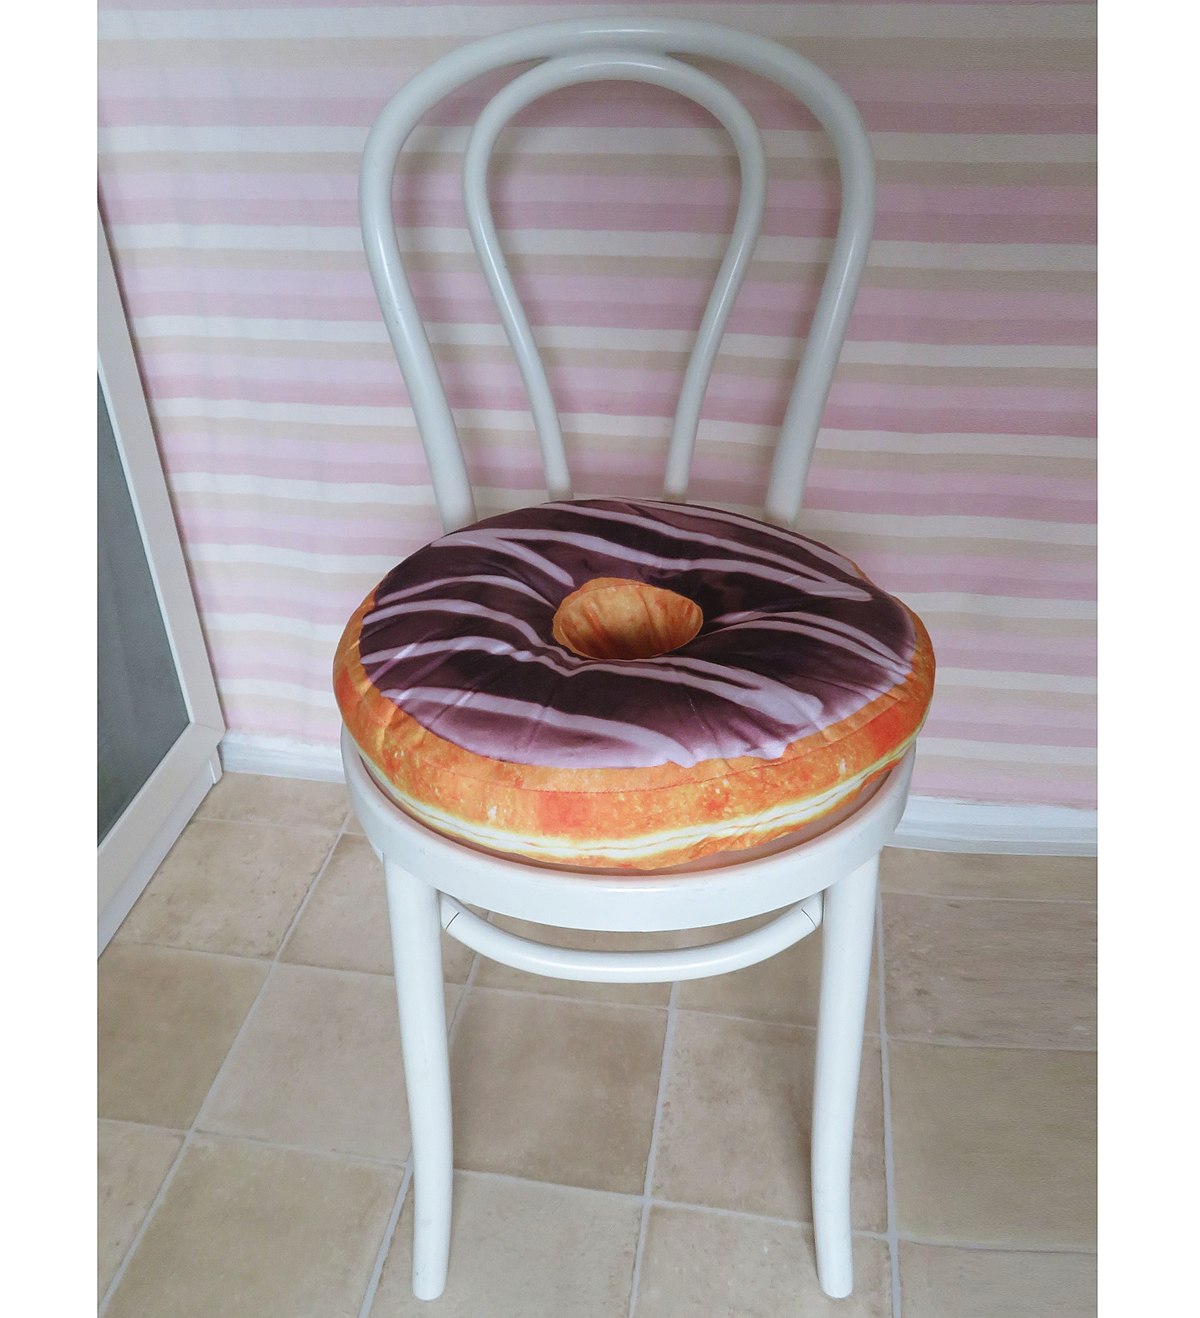 https://upload.wikimedia.org/wikipedia/commons/thumb/2/24/Donut_Pillow_1.jpg/1200px-Donut_Pillow_1.jpg